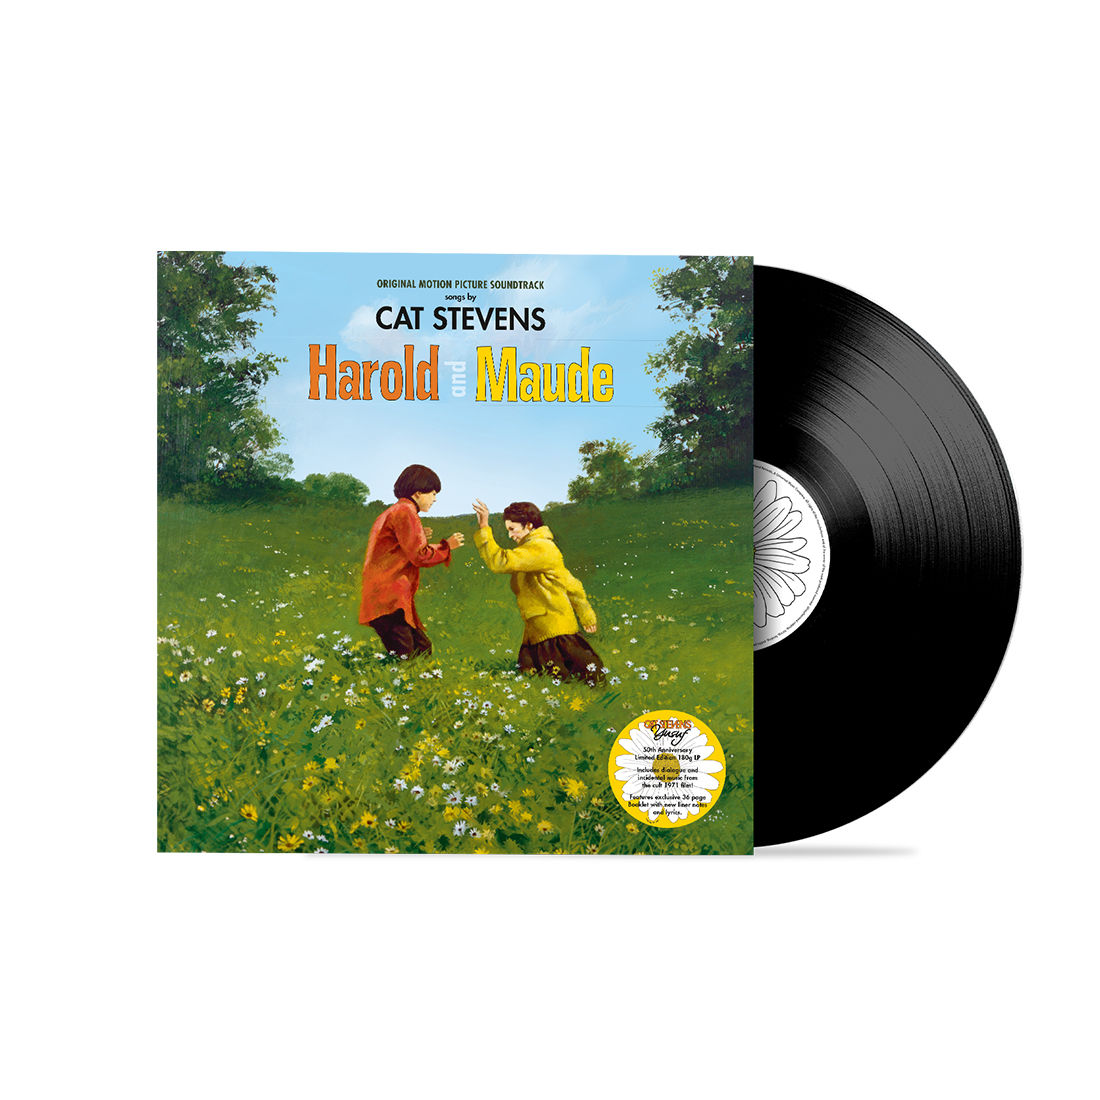 Yusuf / Cat Stevens - Harold & Maude OST: Vinyl LP